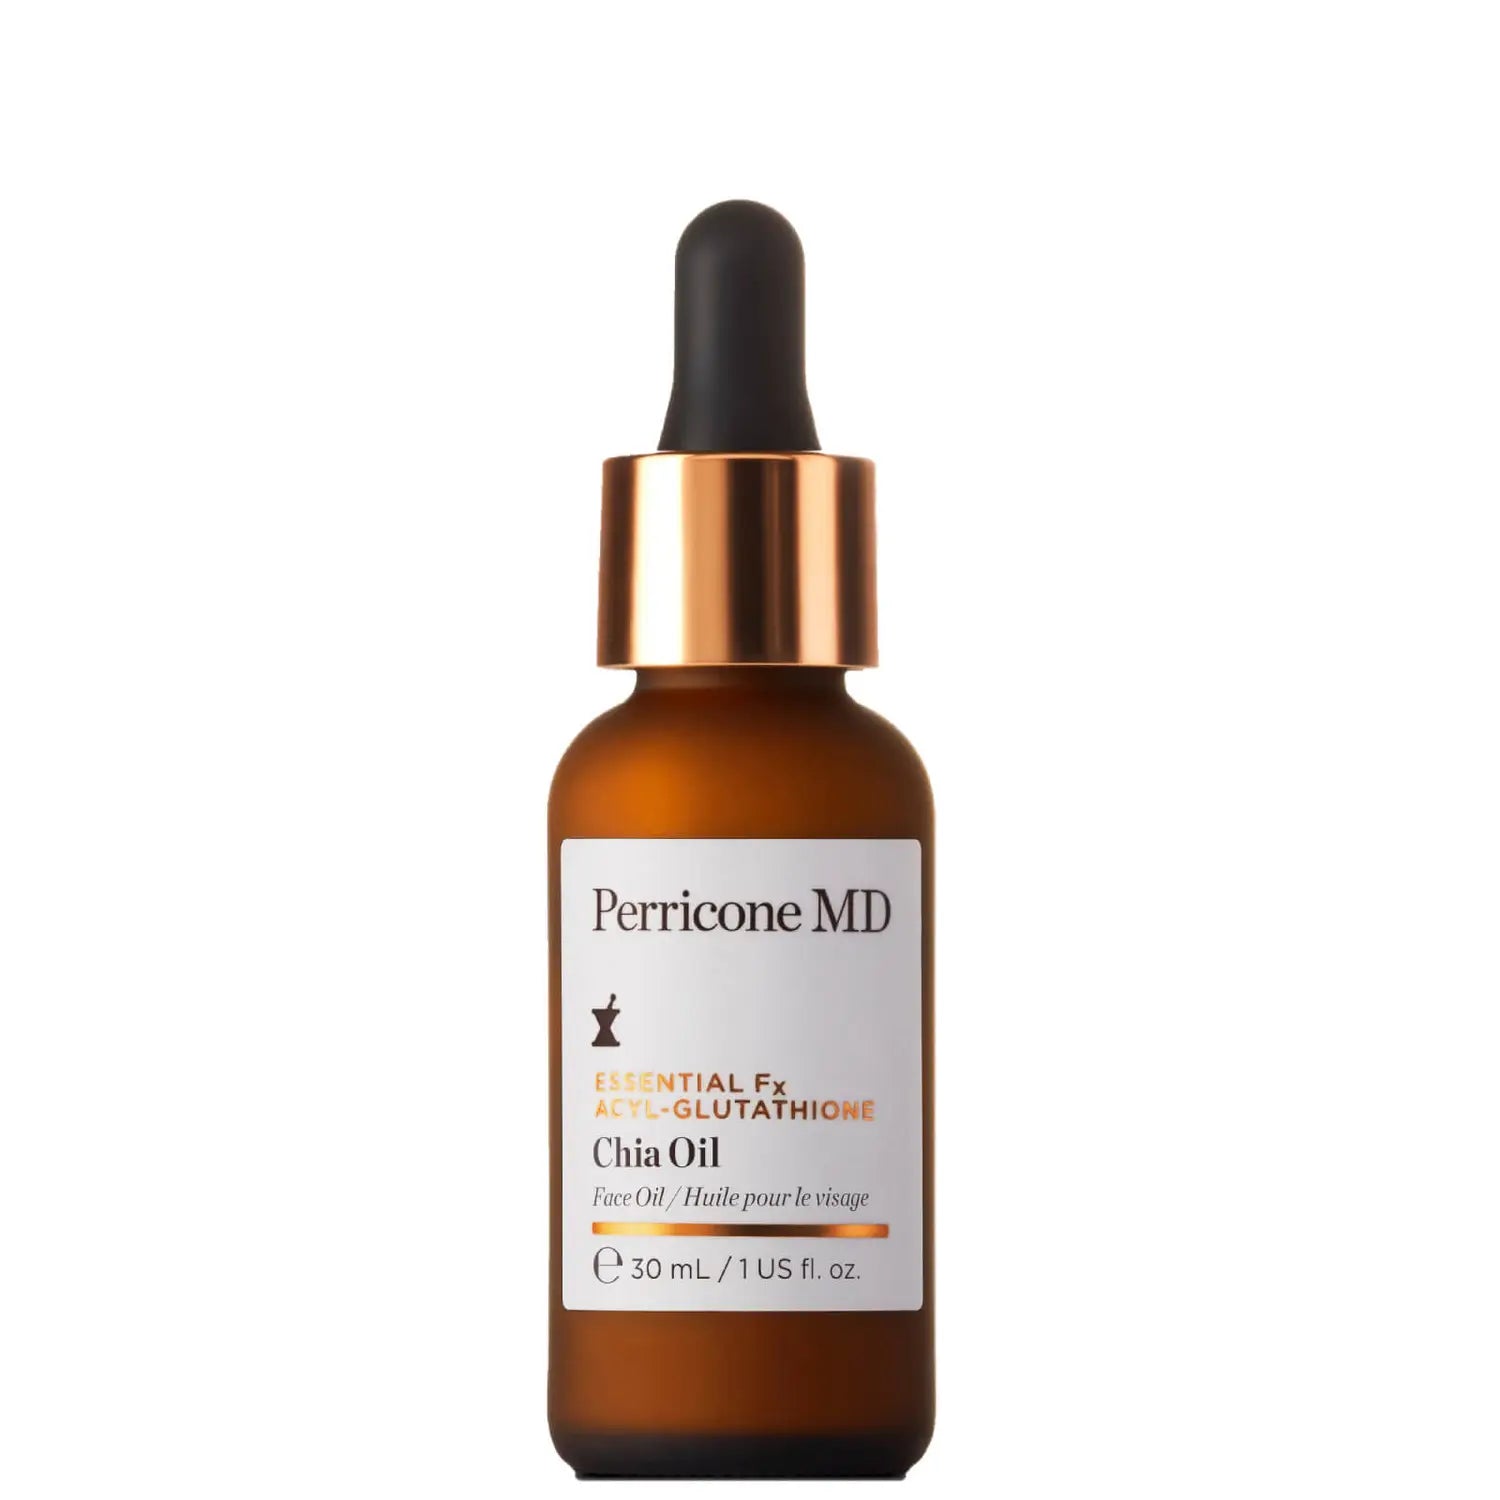 Perricone MD Essential Fx Acyl-Glutathione Chia Oil 1oz